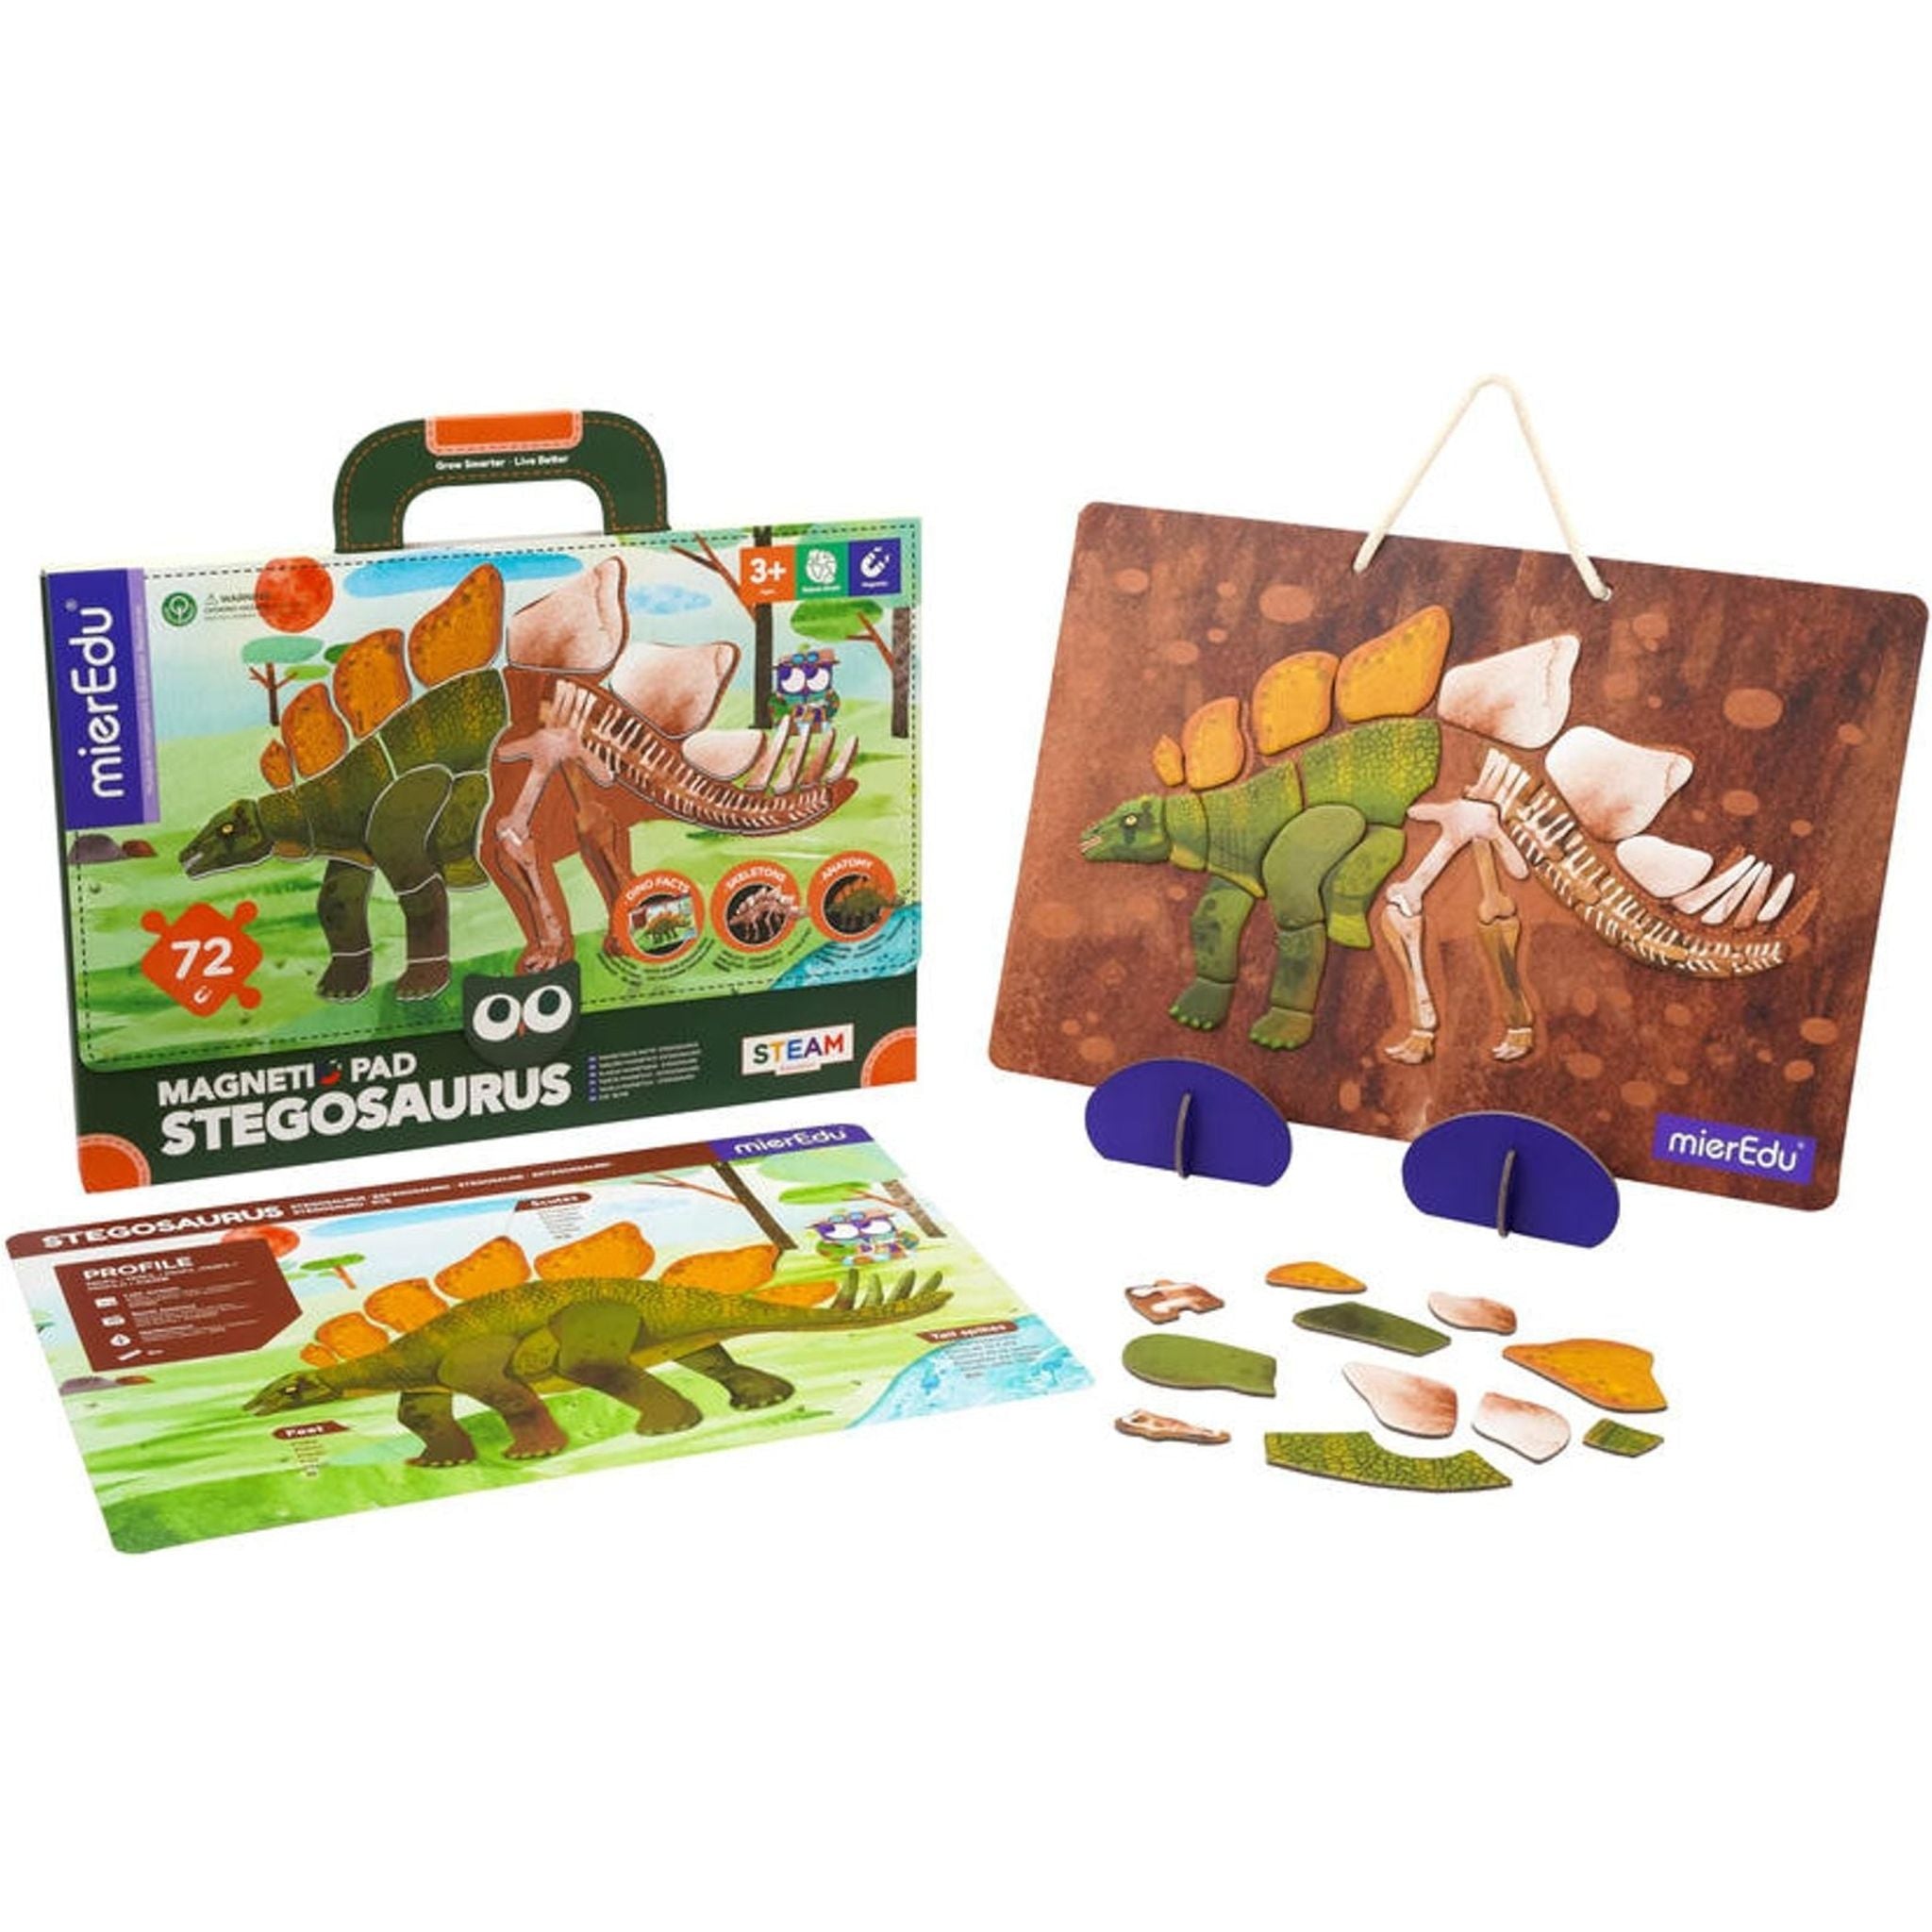 Magnetic Pad - Stegosaurus - Toybox Tales